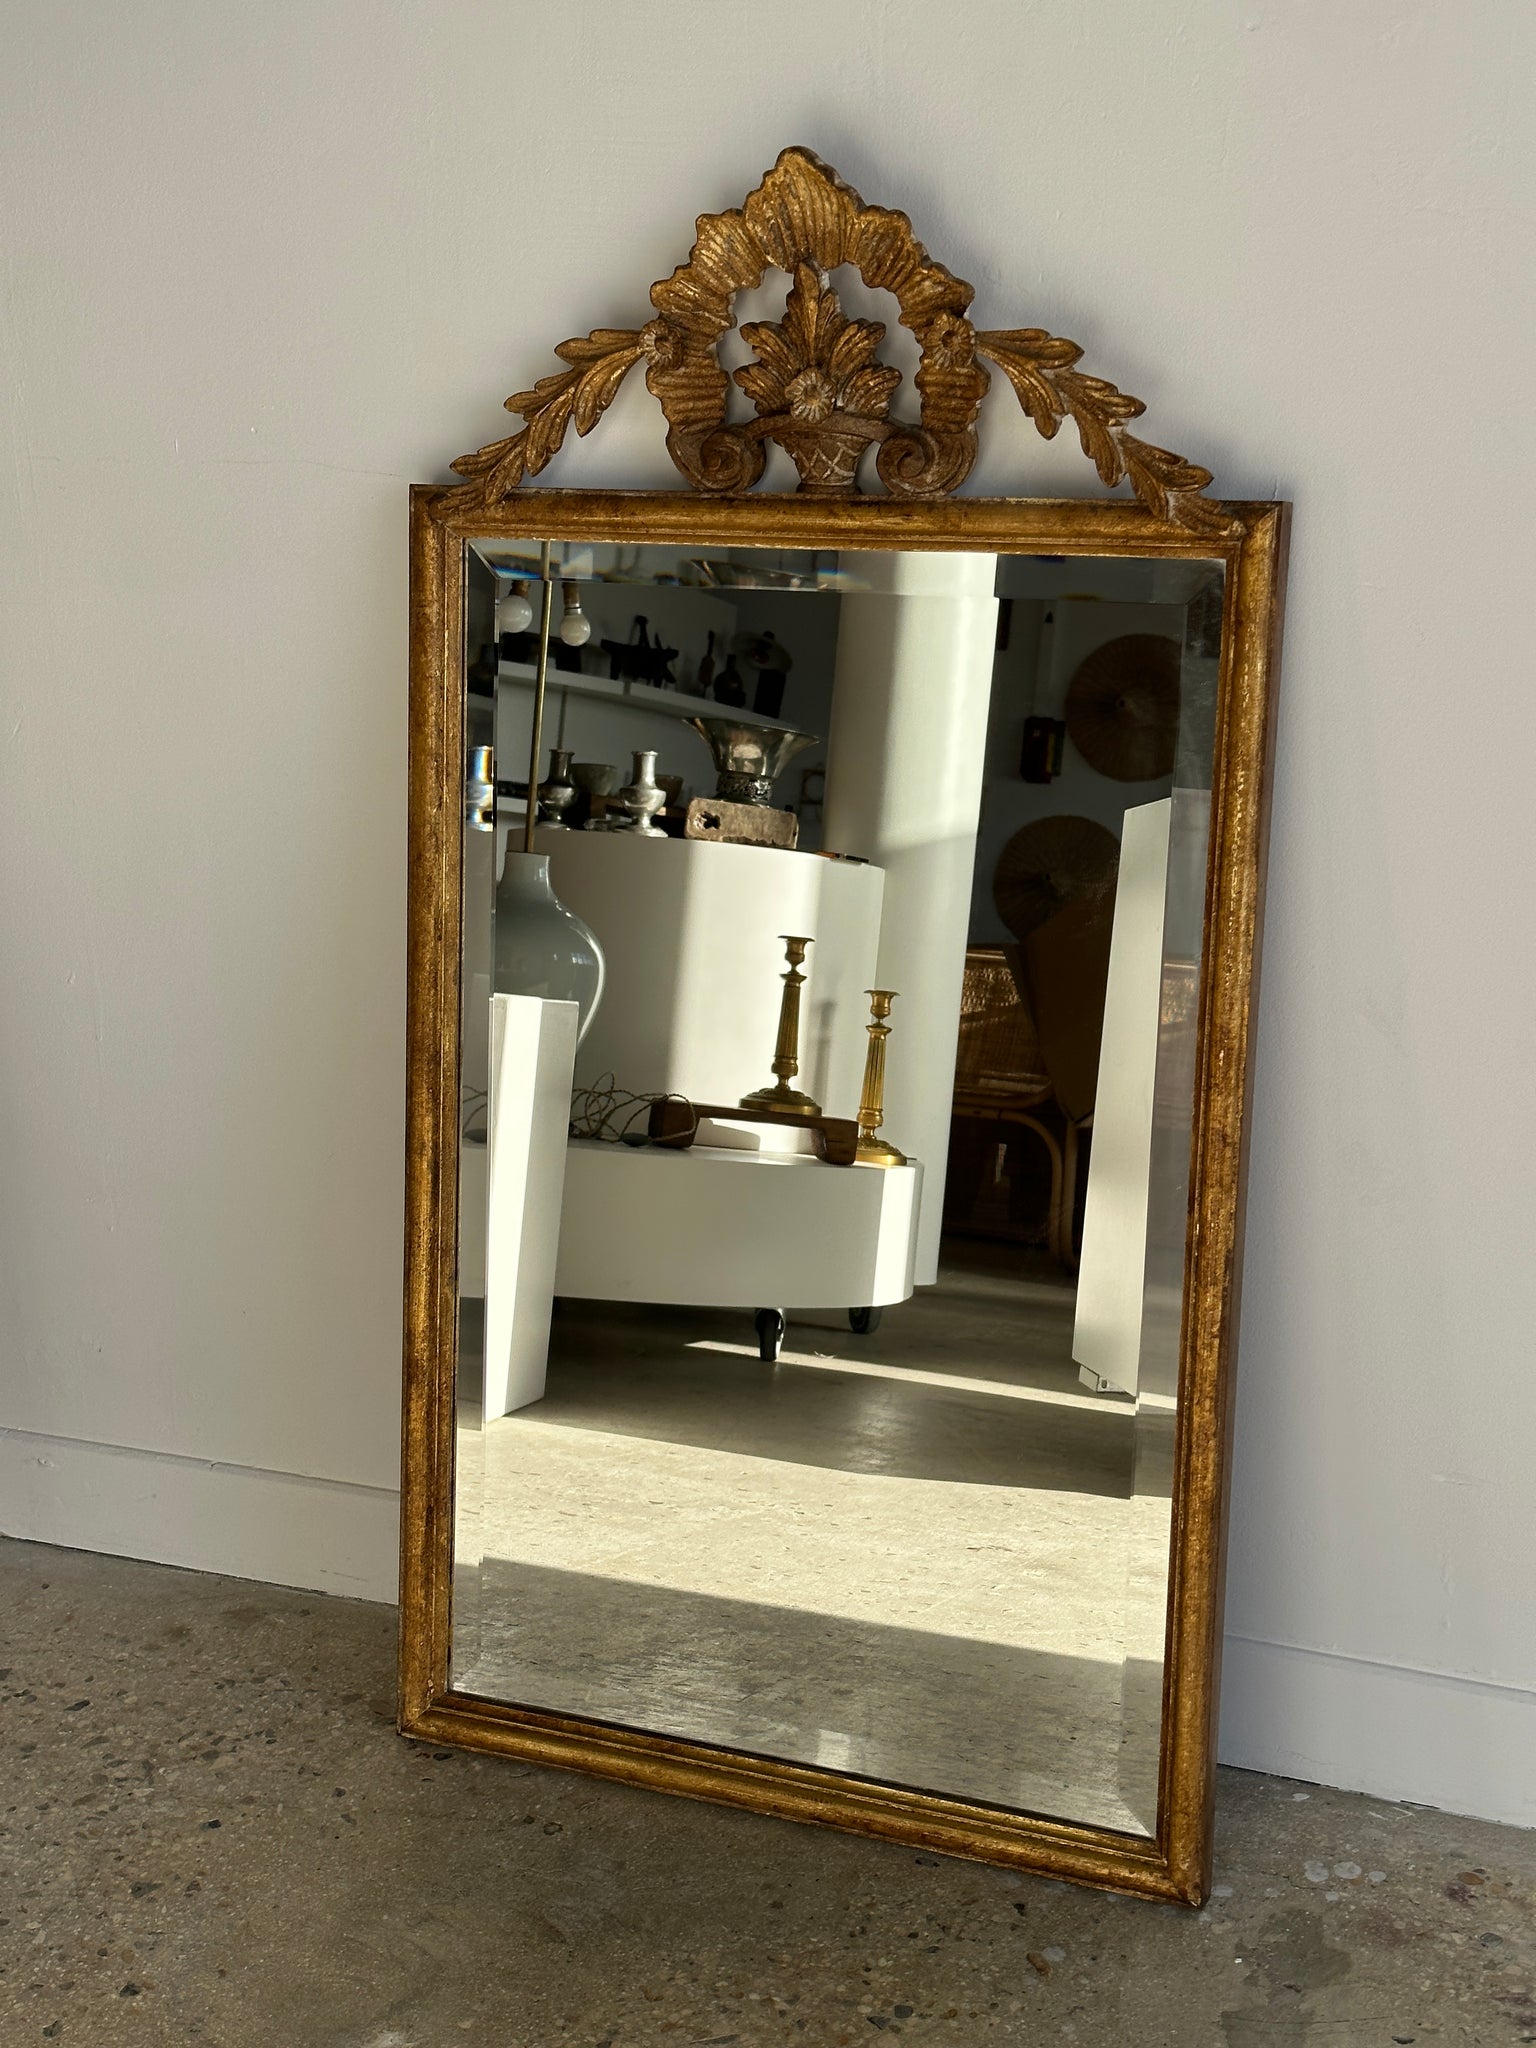 Miroir rectangulaire classique en bois doré à décor de fronton végétal